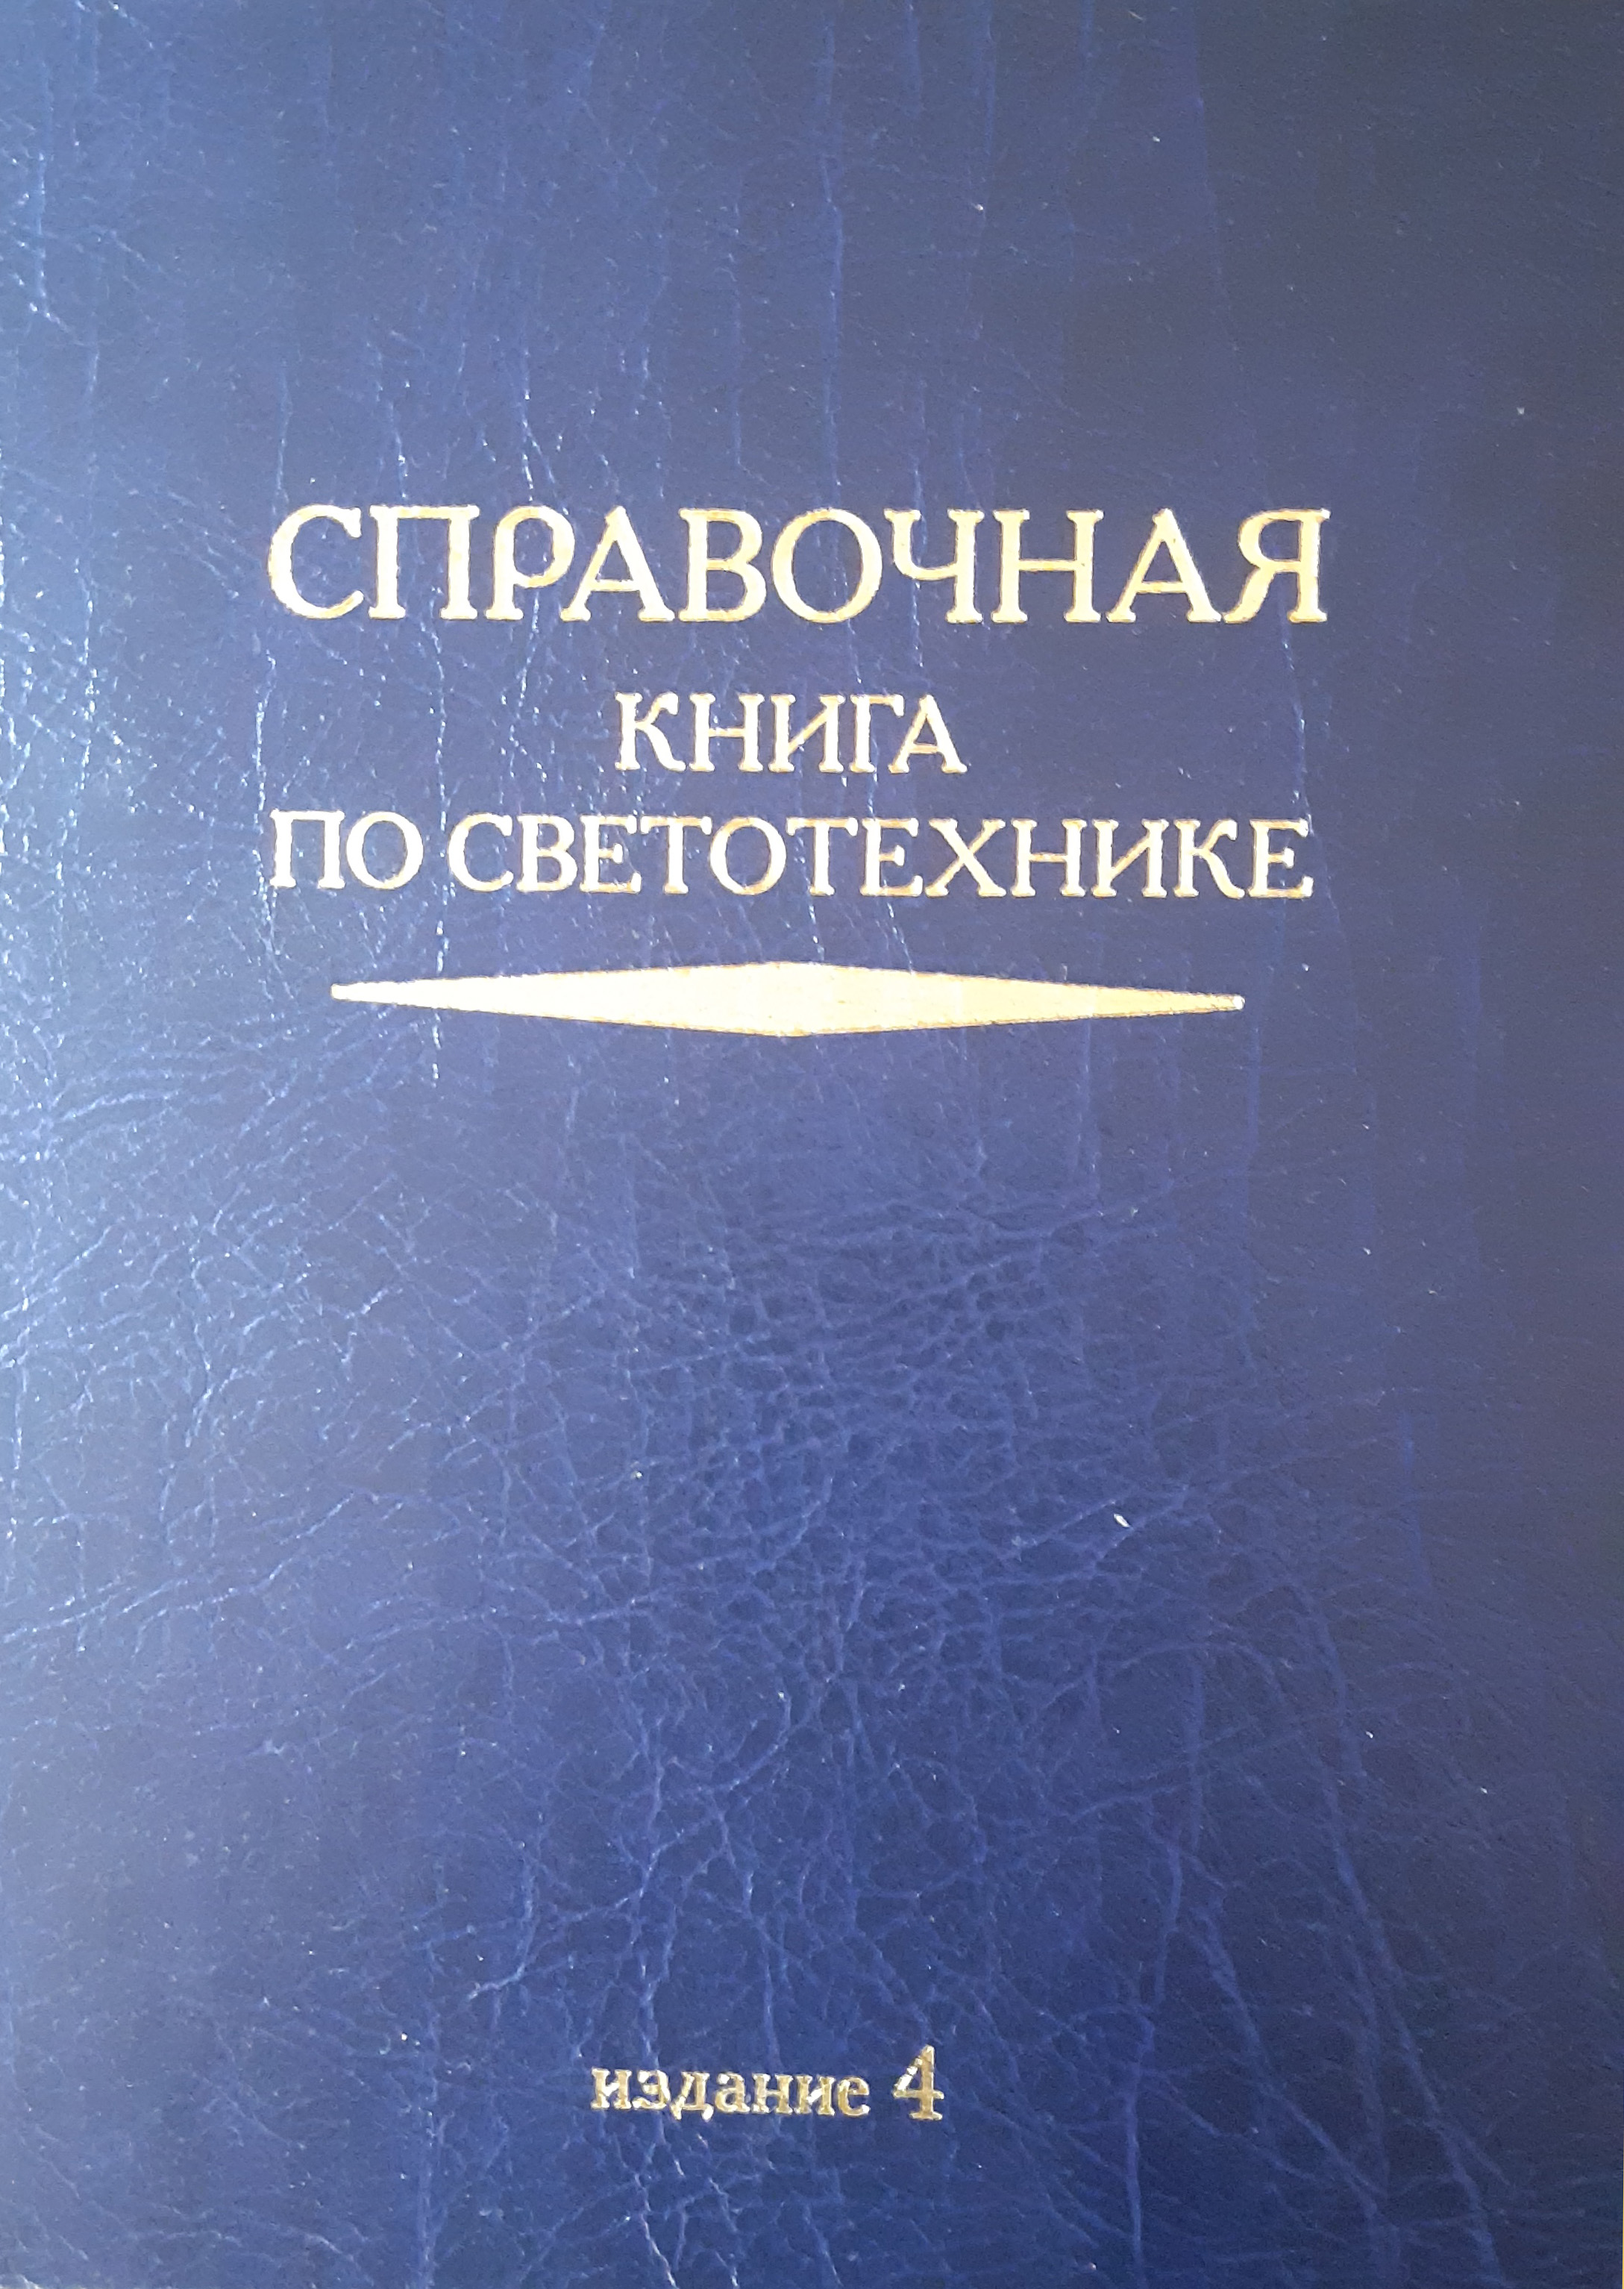 Справочная книга по светотехнике (4 издание). Введение